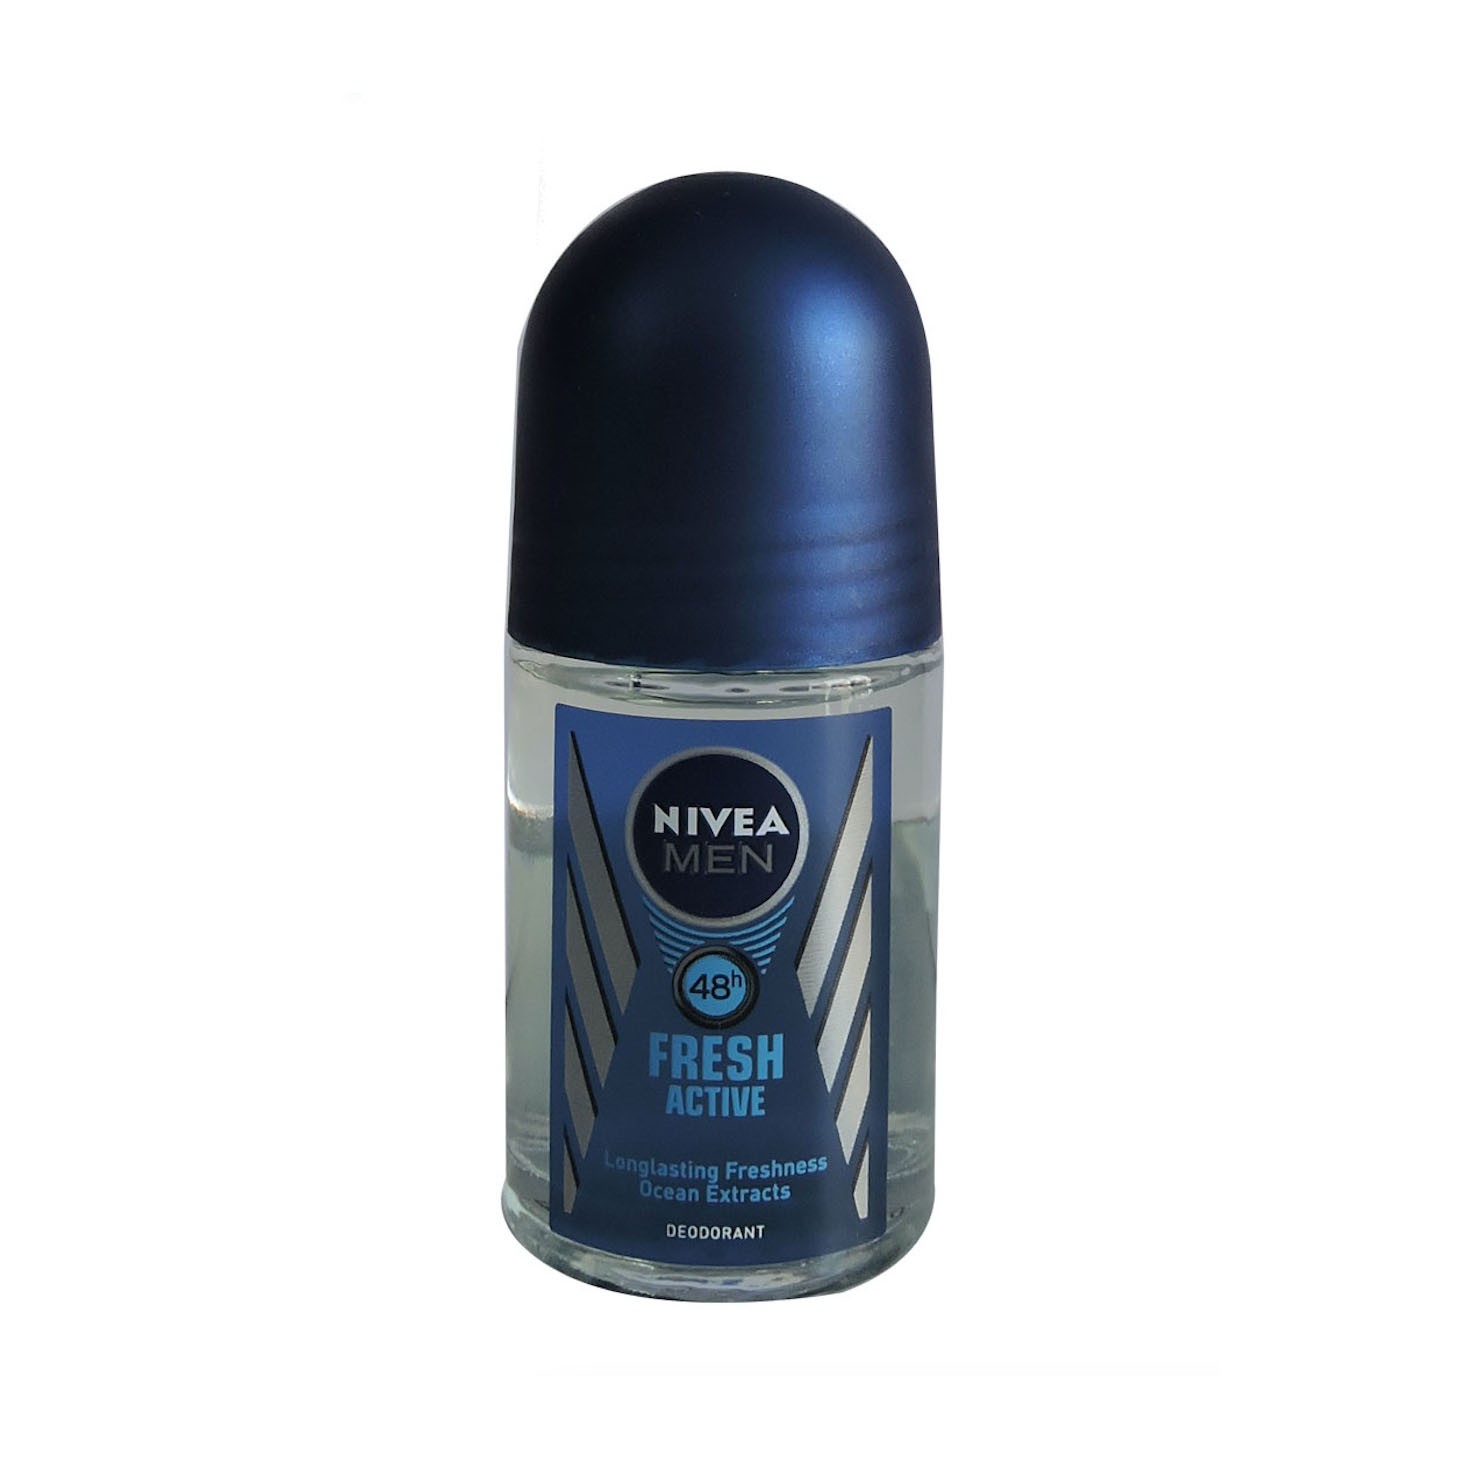 Nivea Roll On - Glass Bottle of 25ml - MEN - Fresh Active - P/C - 2504